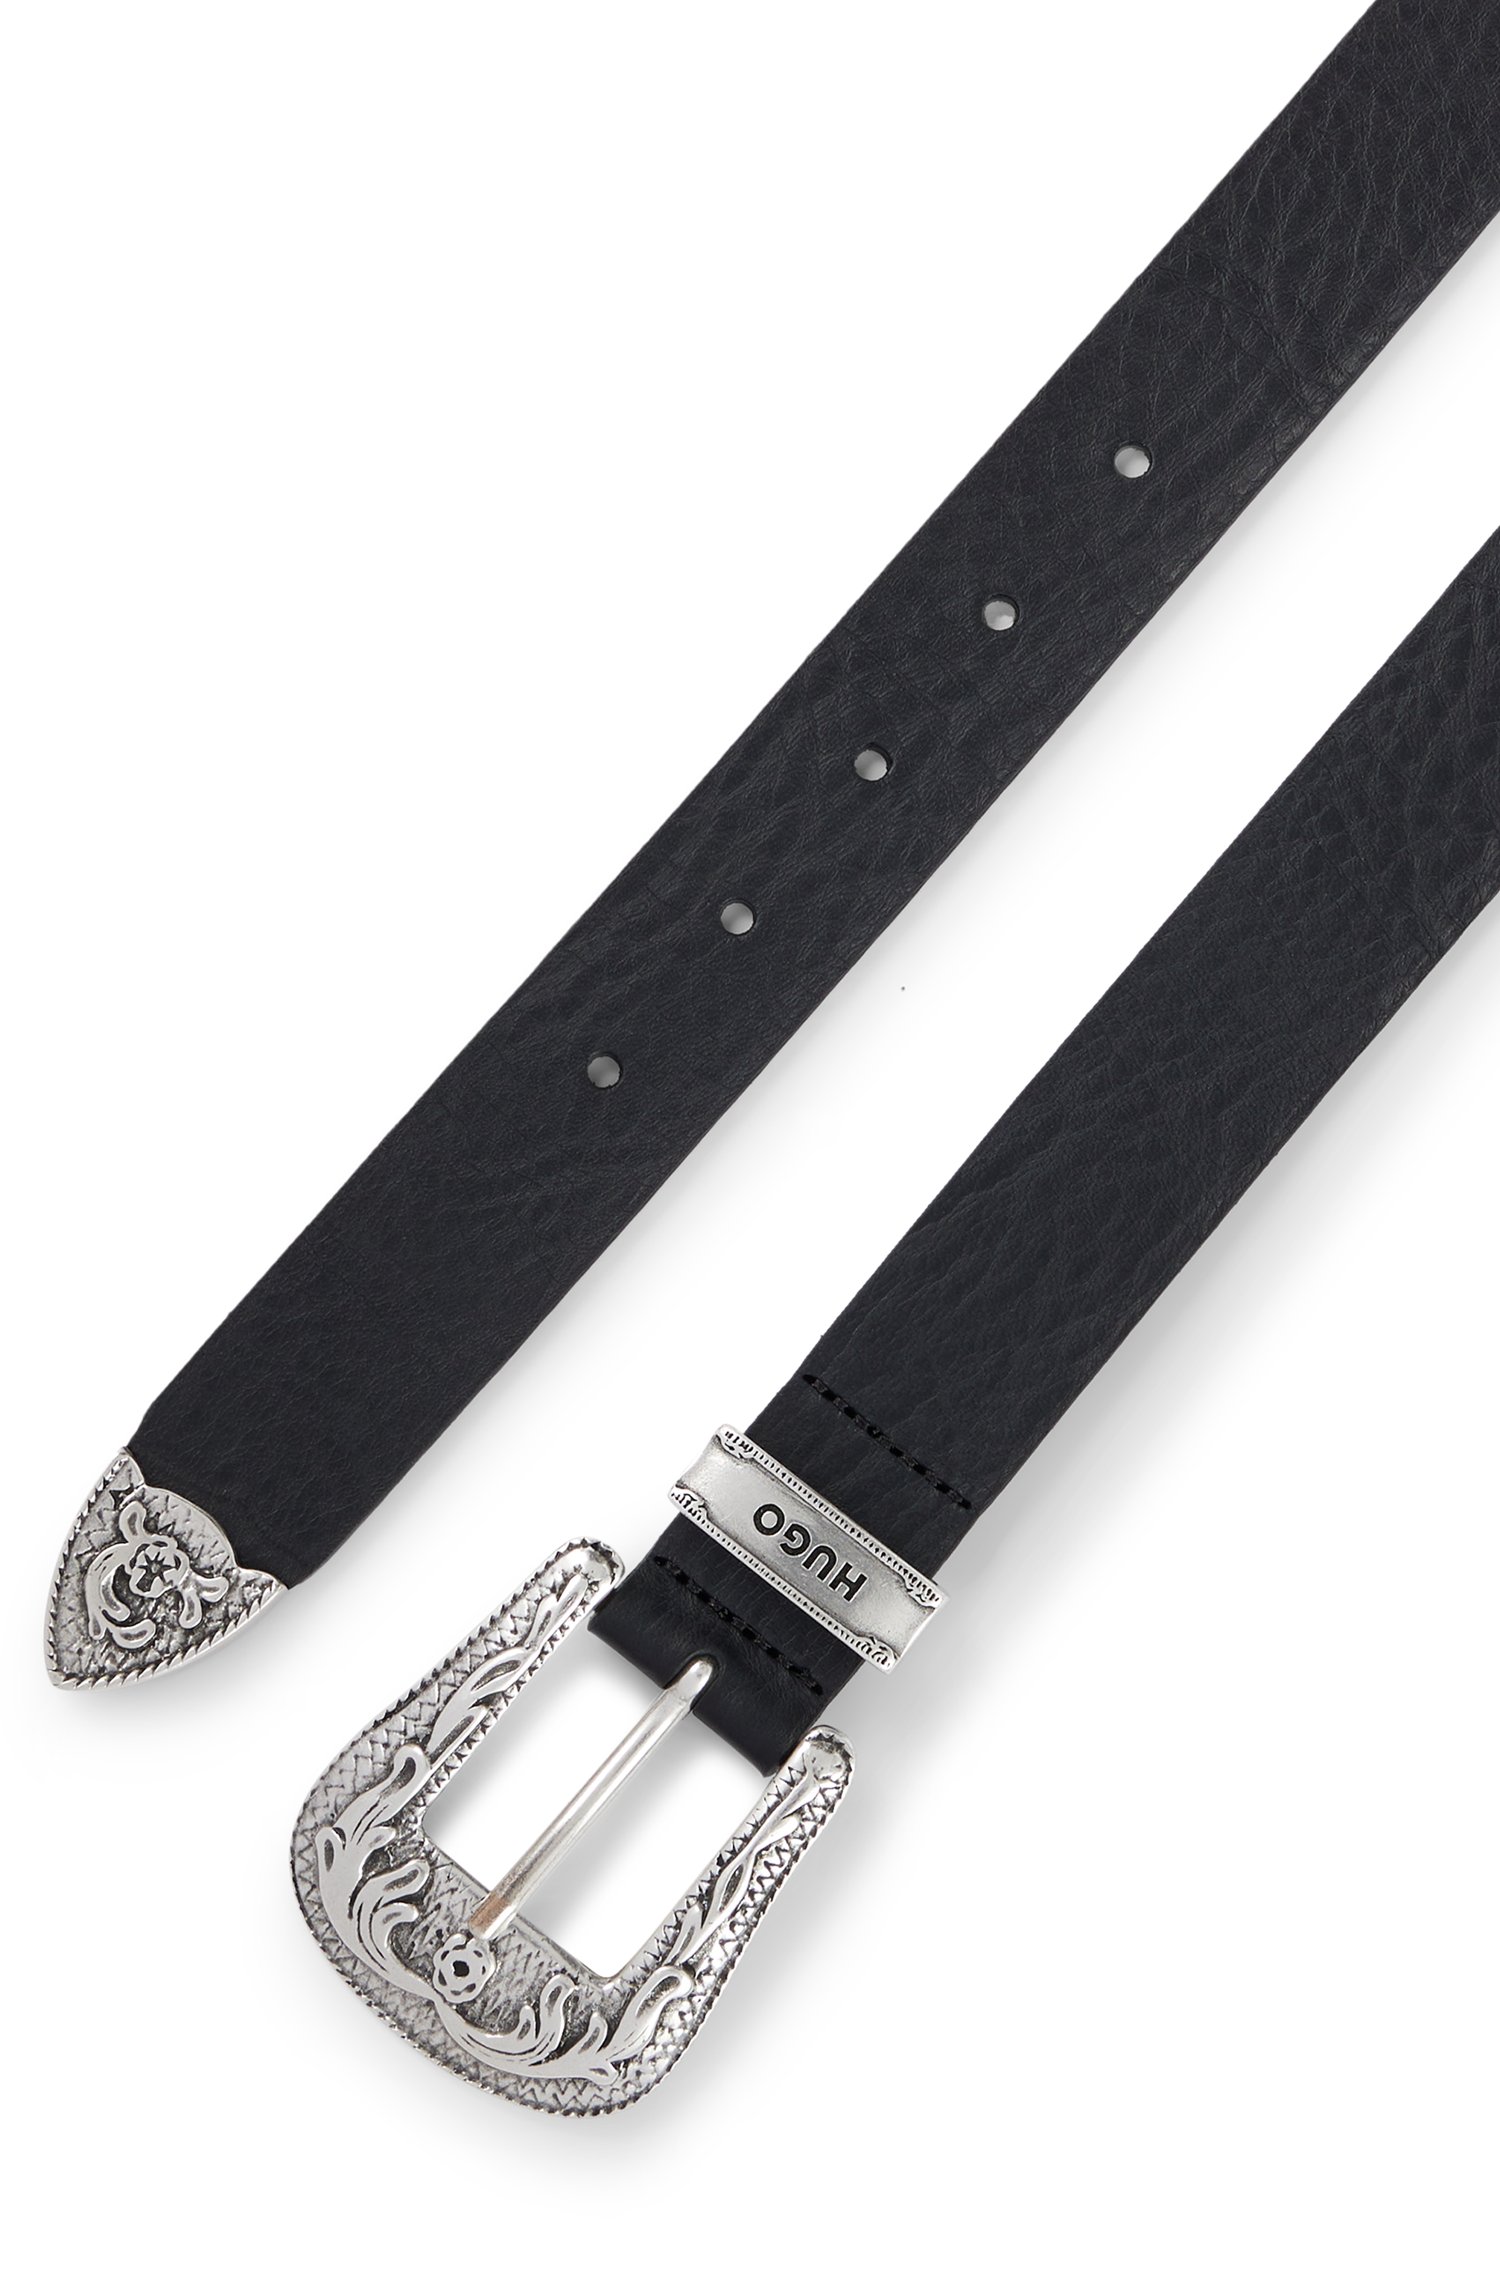 Cinturón de piel italiana con hebilla, trabilla y punta ornamentadas